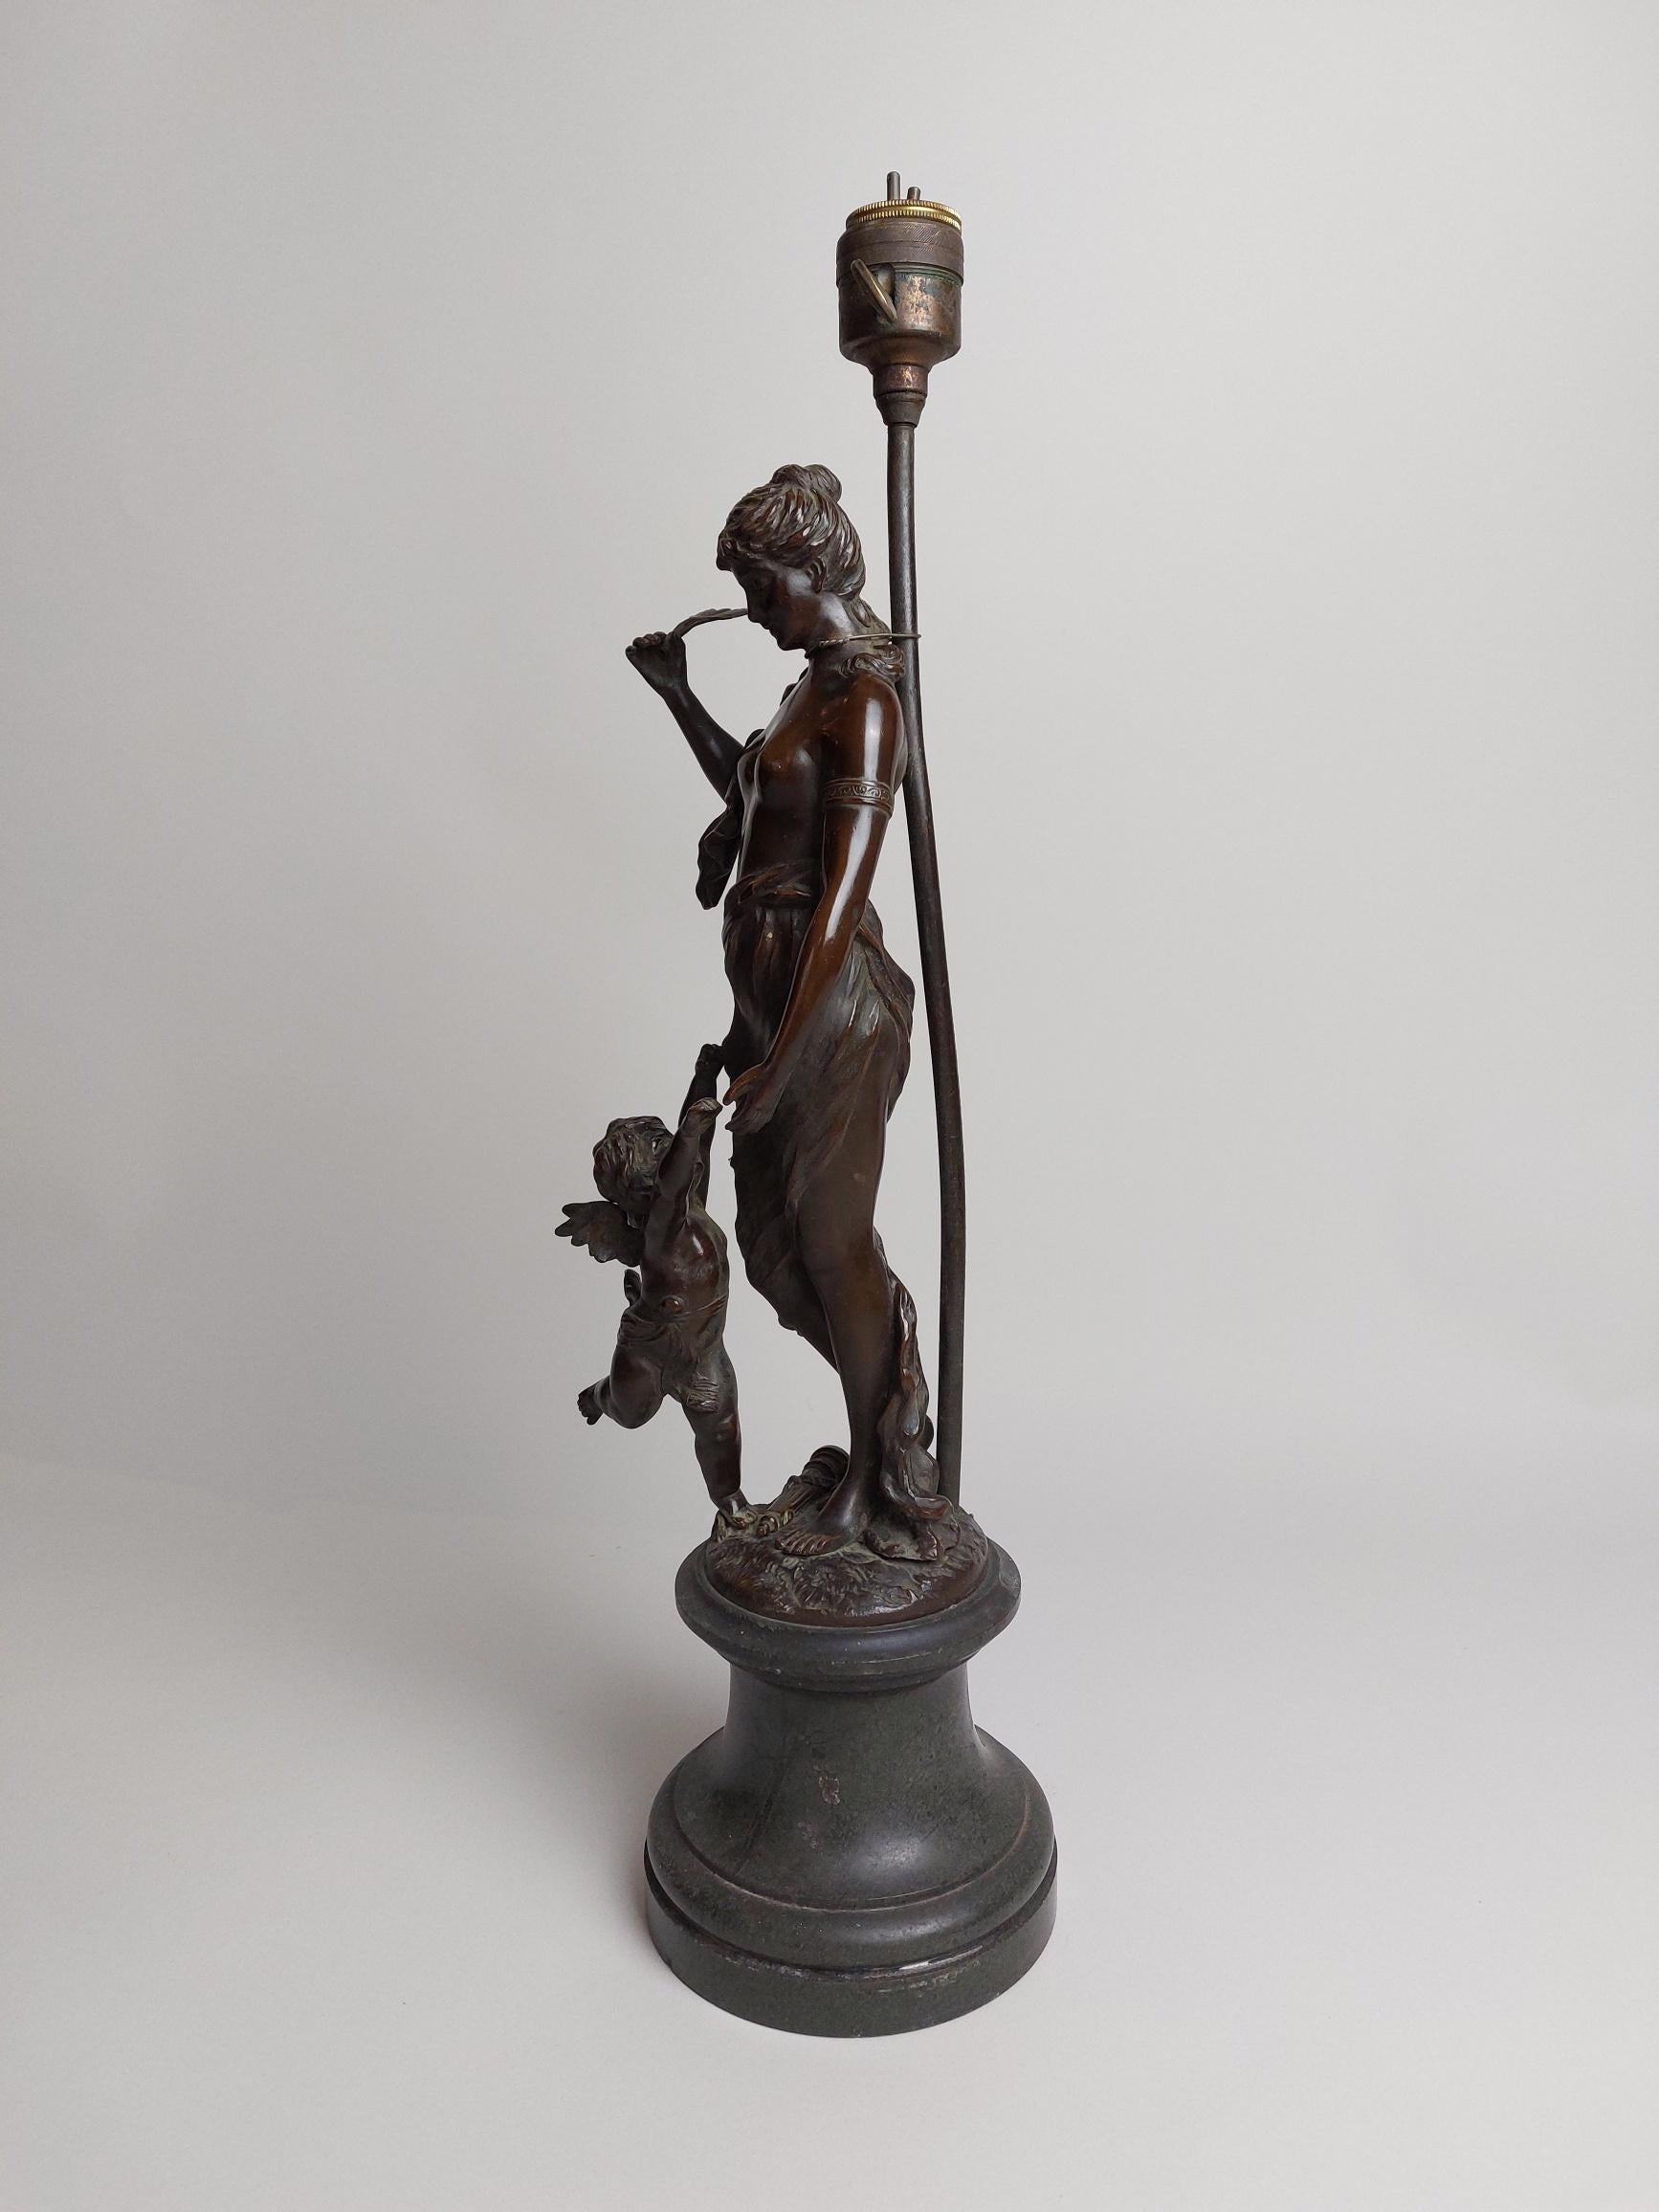 Ein stilvoller Lampenfuß aus Bronze aus dem 19. Jahrhundert in Form einer halbnackten Dame mit einem geflügelten Putto zu ihren Füßen.
Bitte beachten Sie, dass dies verkauft wird, wie die Lampe Armatur gesehen funktioniert nicht und muss neu